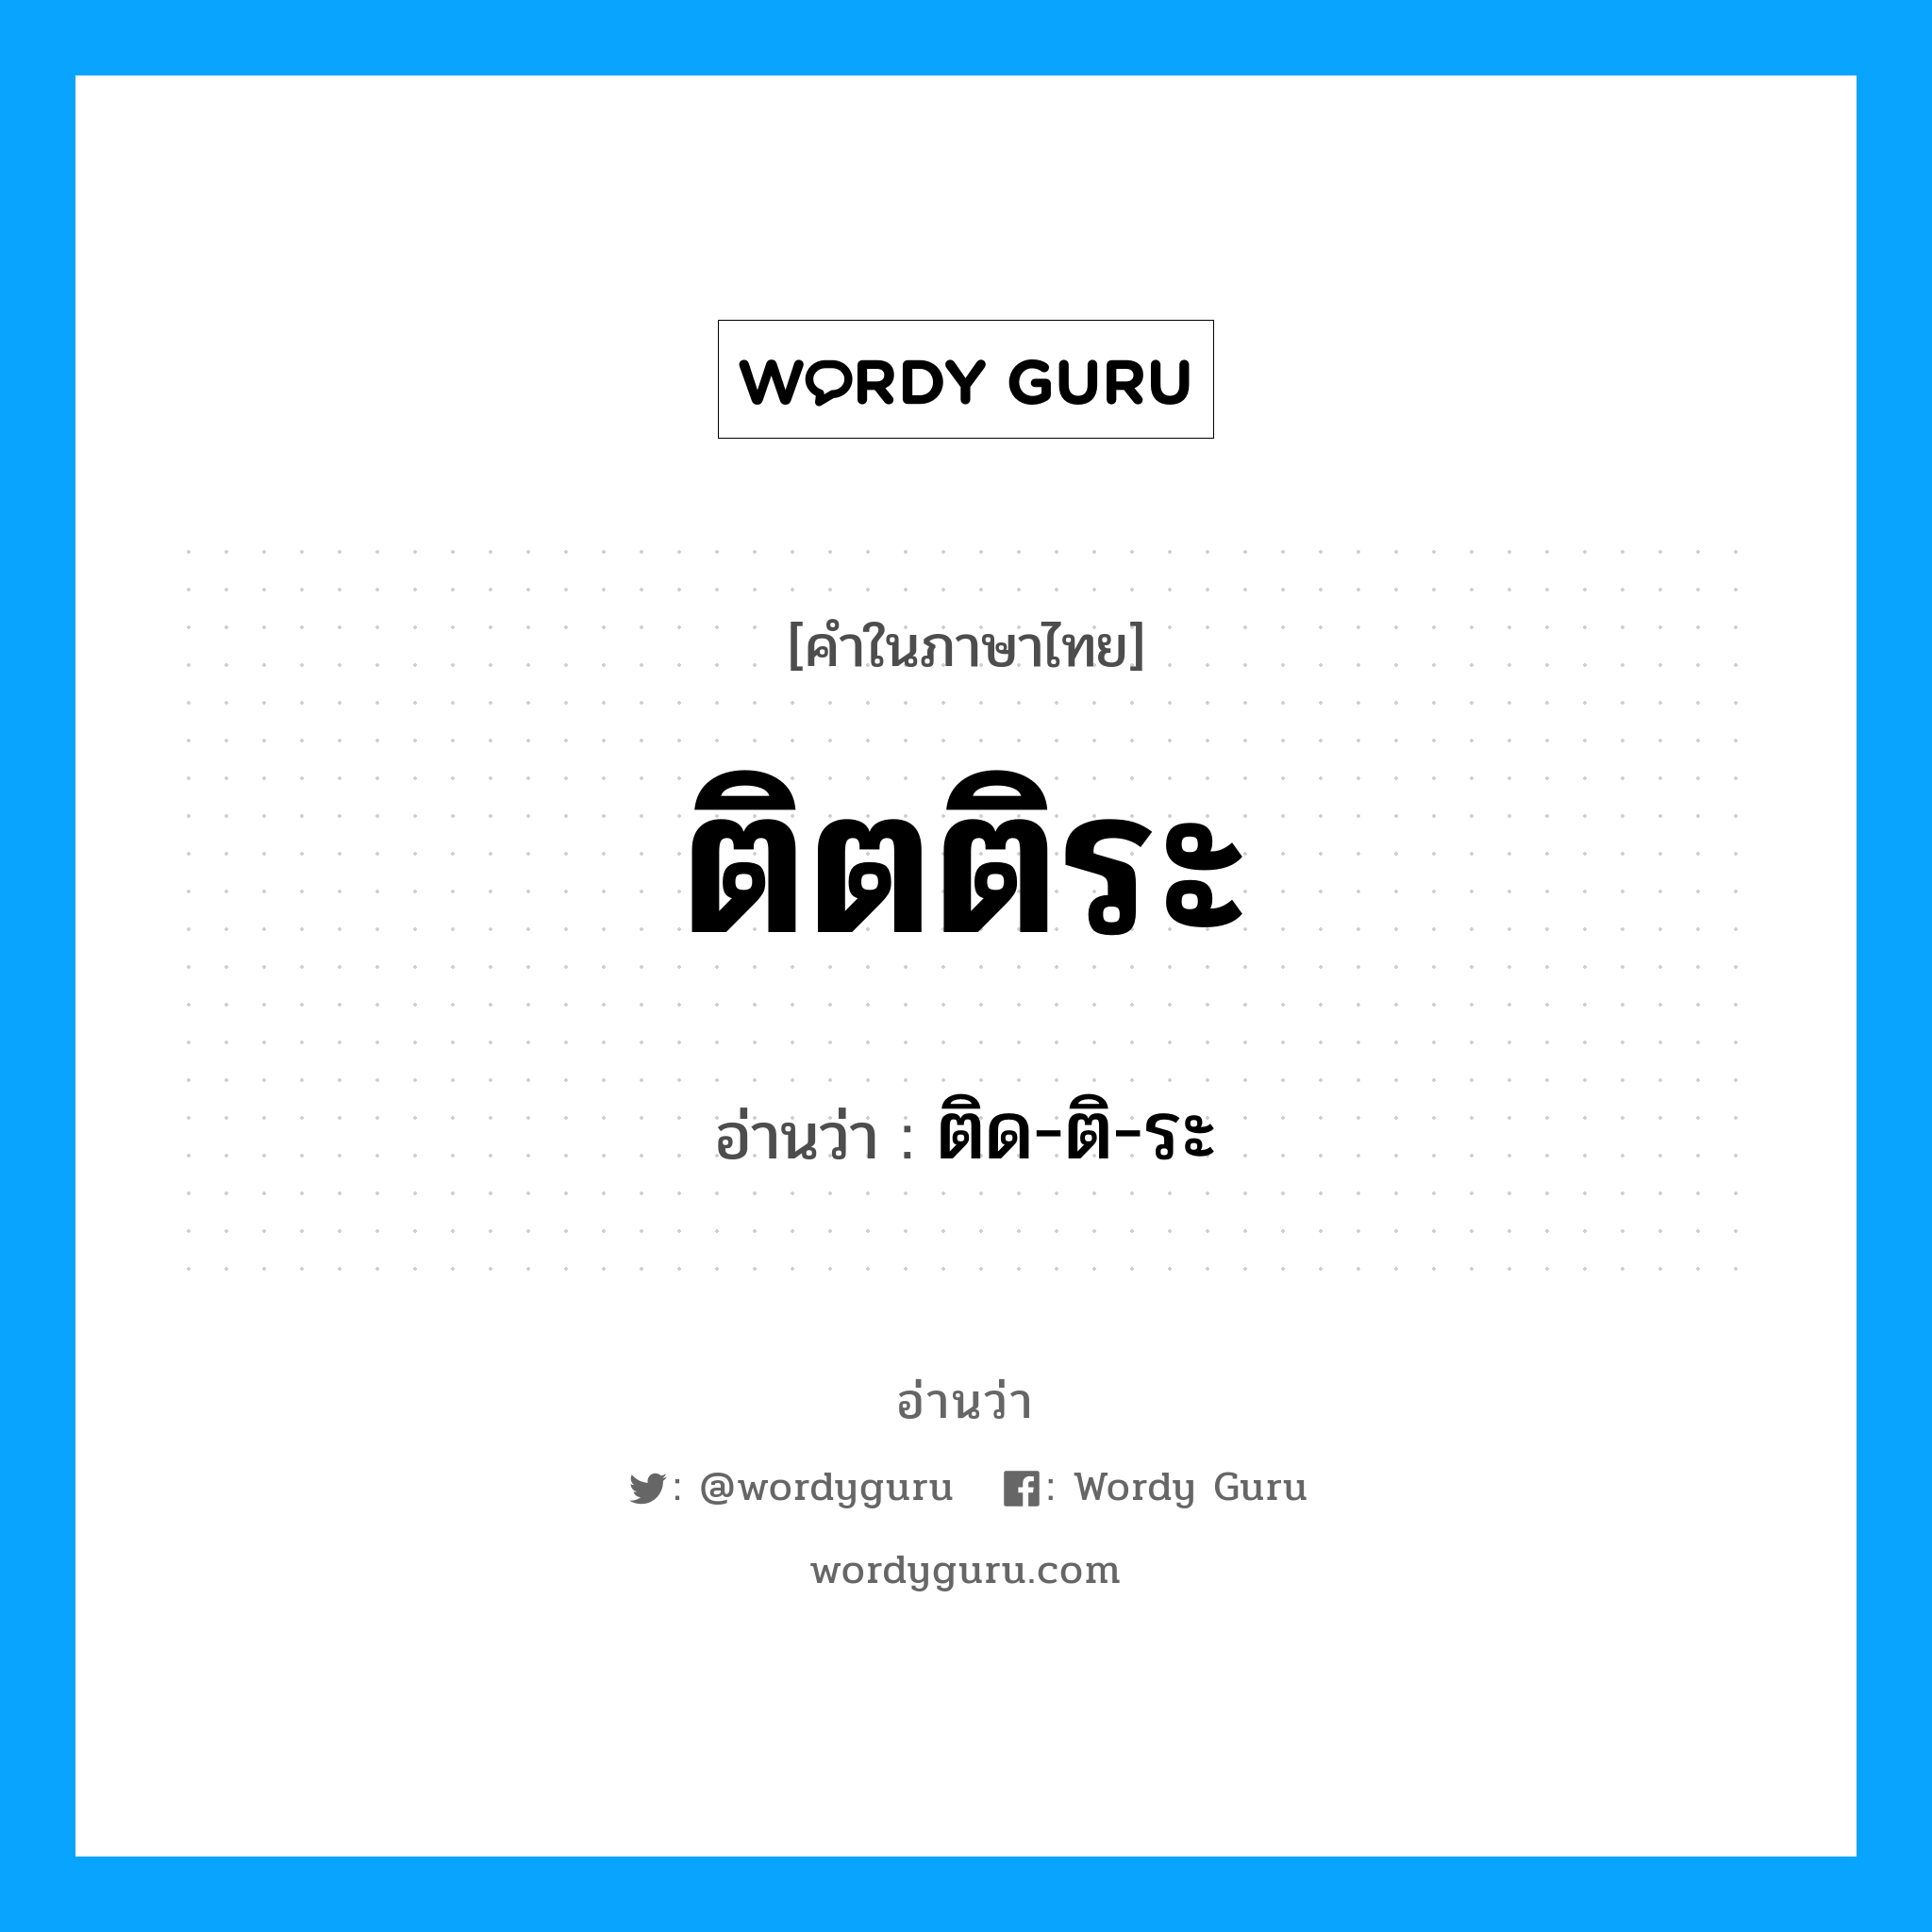 ติด-ติ-ระ เป็นคำอ่านของคำไหน?, คำในภาษาไทย ติด-ติ-ระ อ่านว่า ติตติระ